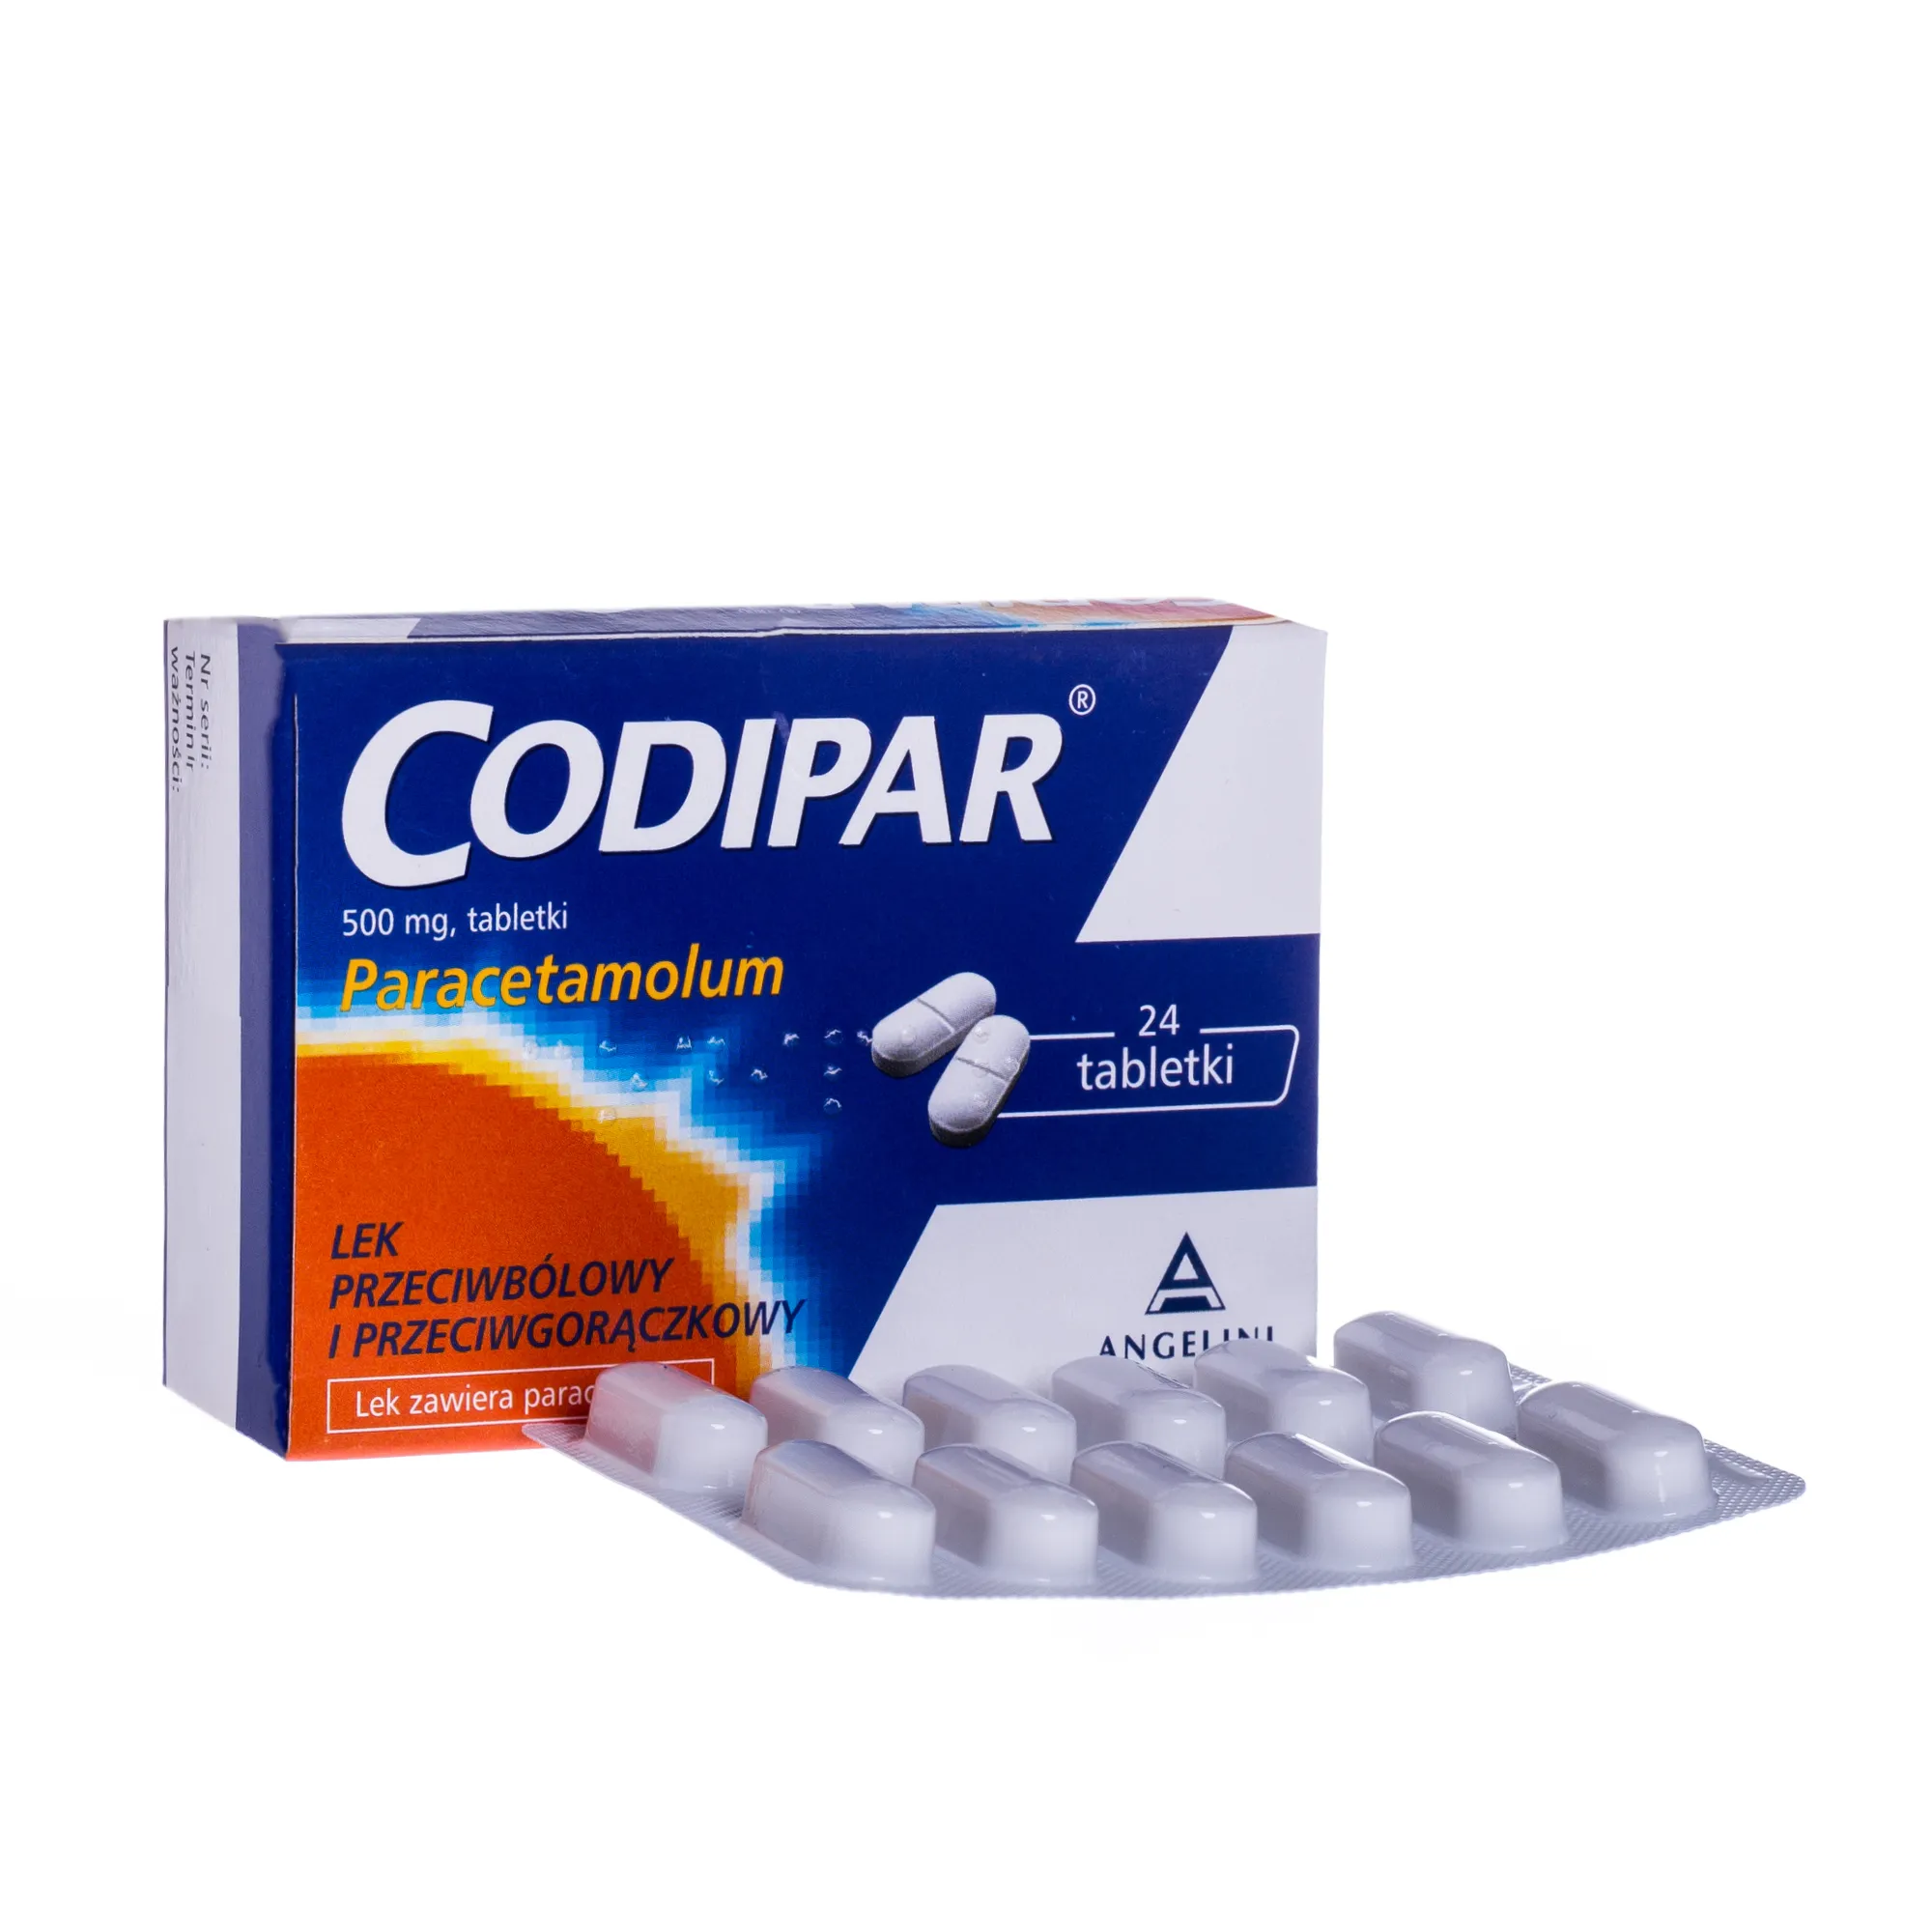 Codipar, lek przeciwbólowy i przeciwgorączkowy, 24 tabletki